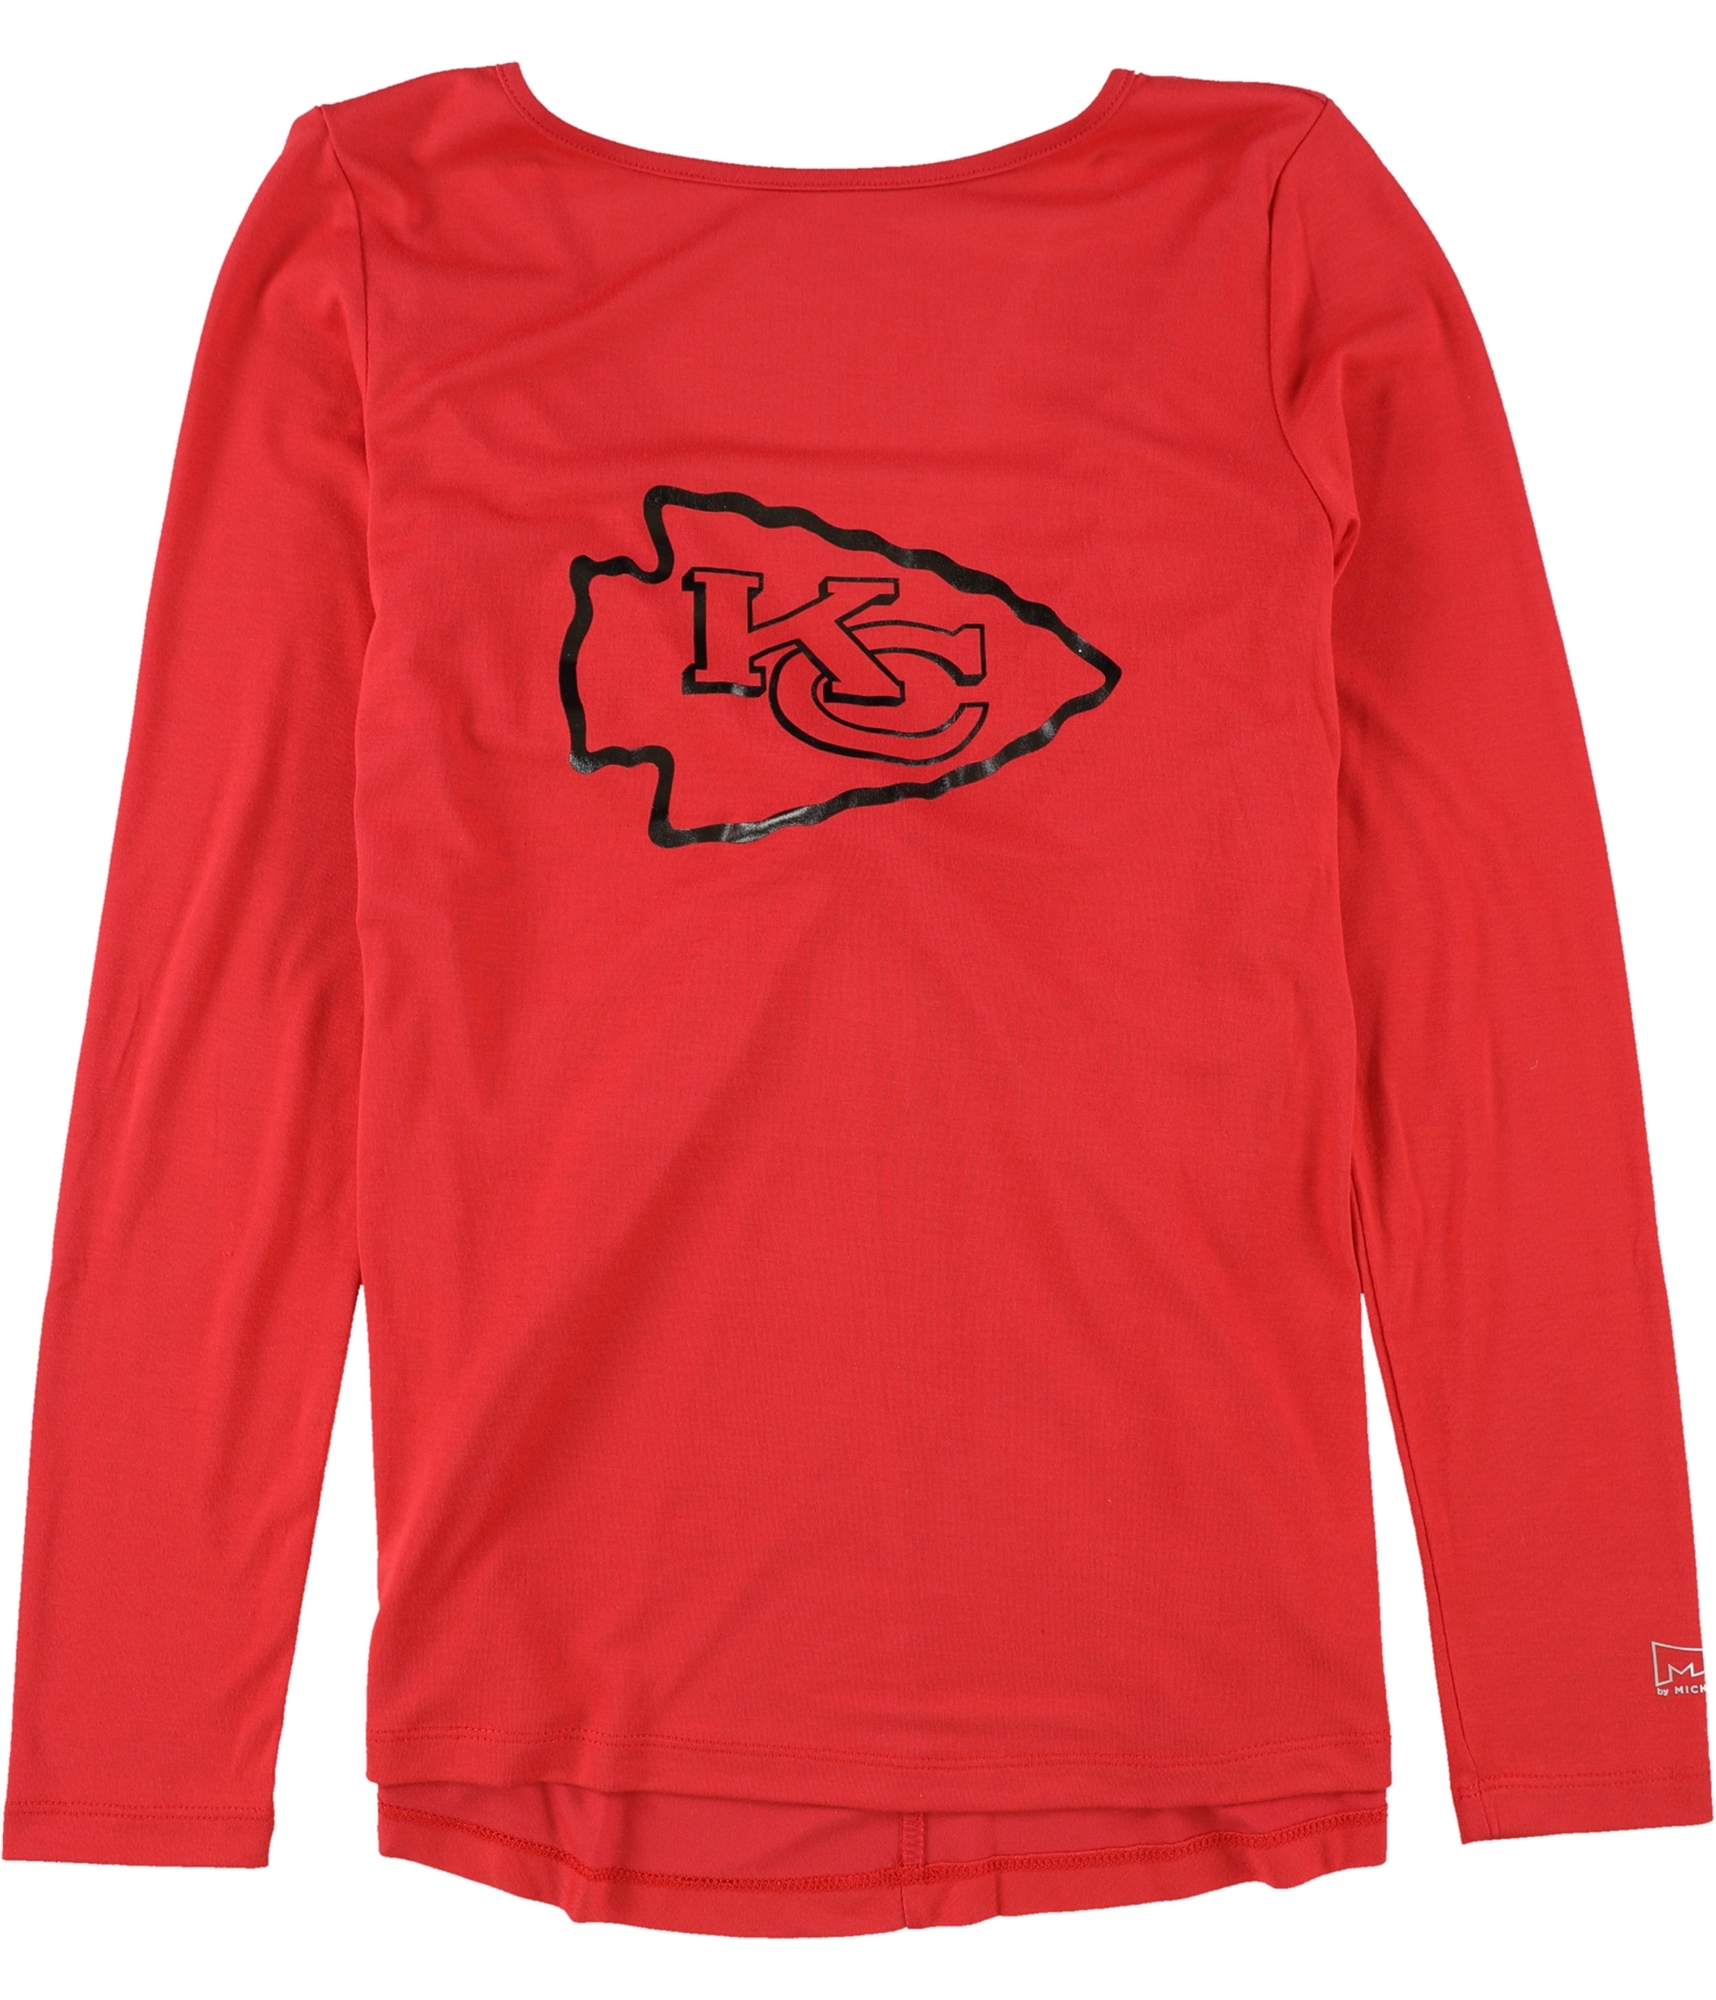 Glitter Chiefs Top, Kansas City Football, Women's Football Shirt, NFL  Inspired, Game Day Apparel